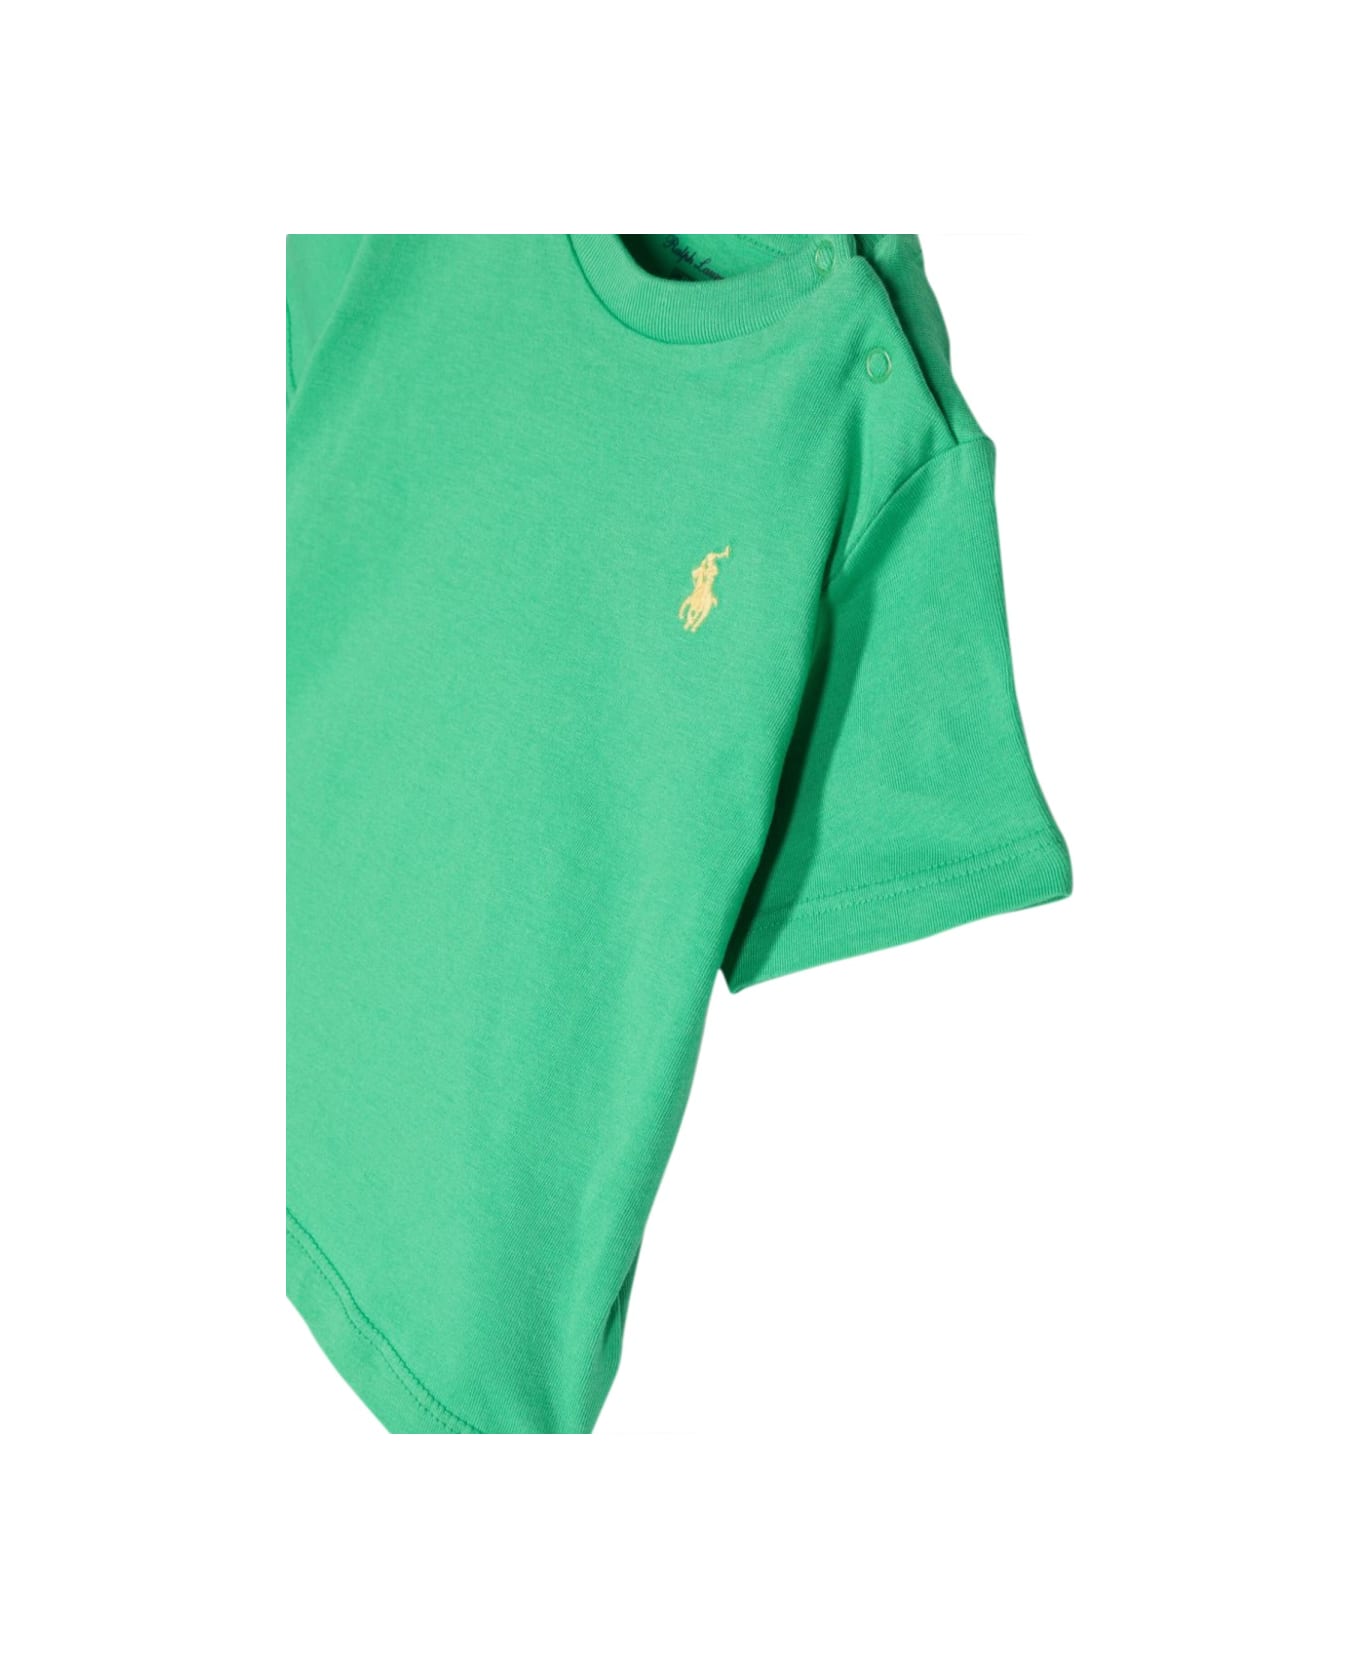 Ralph Lauren Ss Cn-tops-t-shirt - MULTICOLOUR